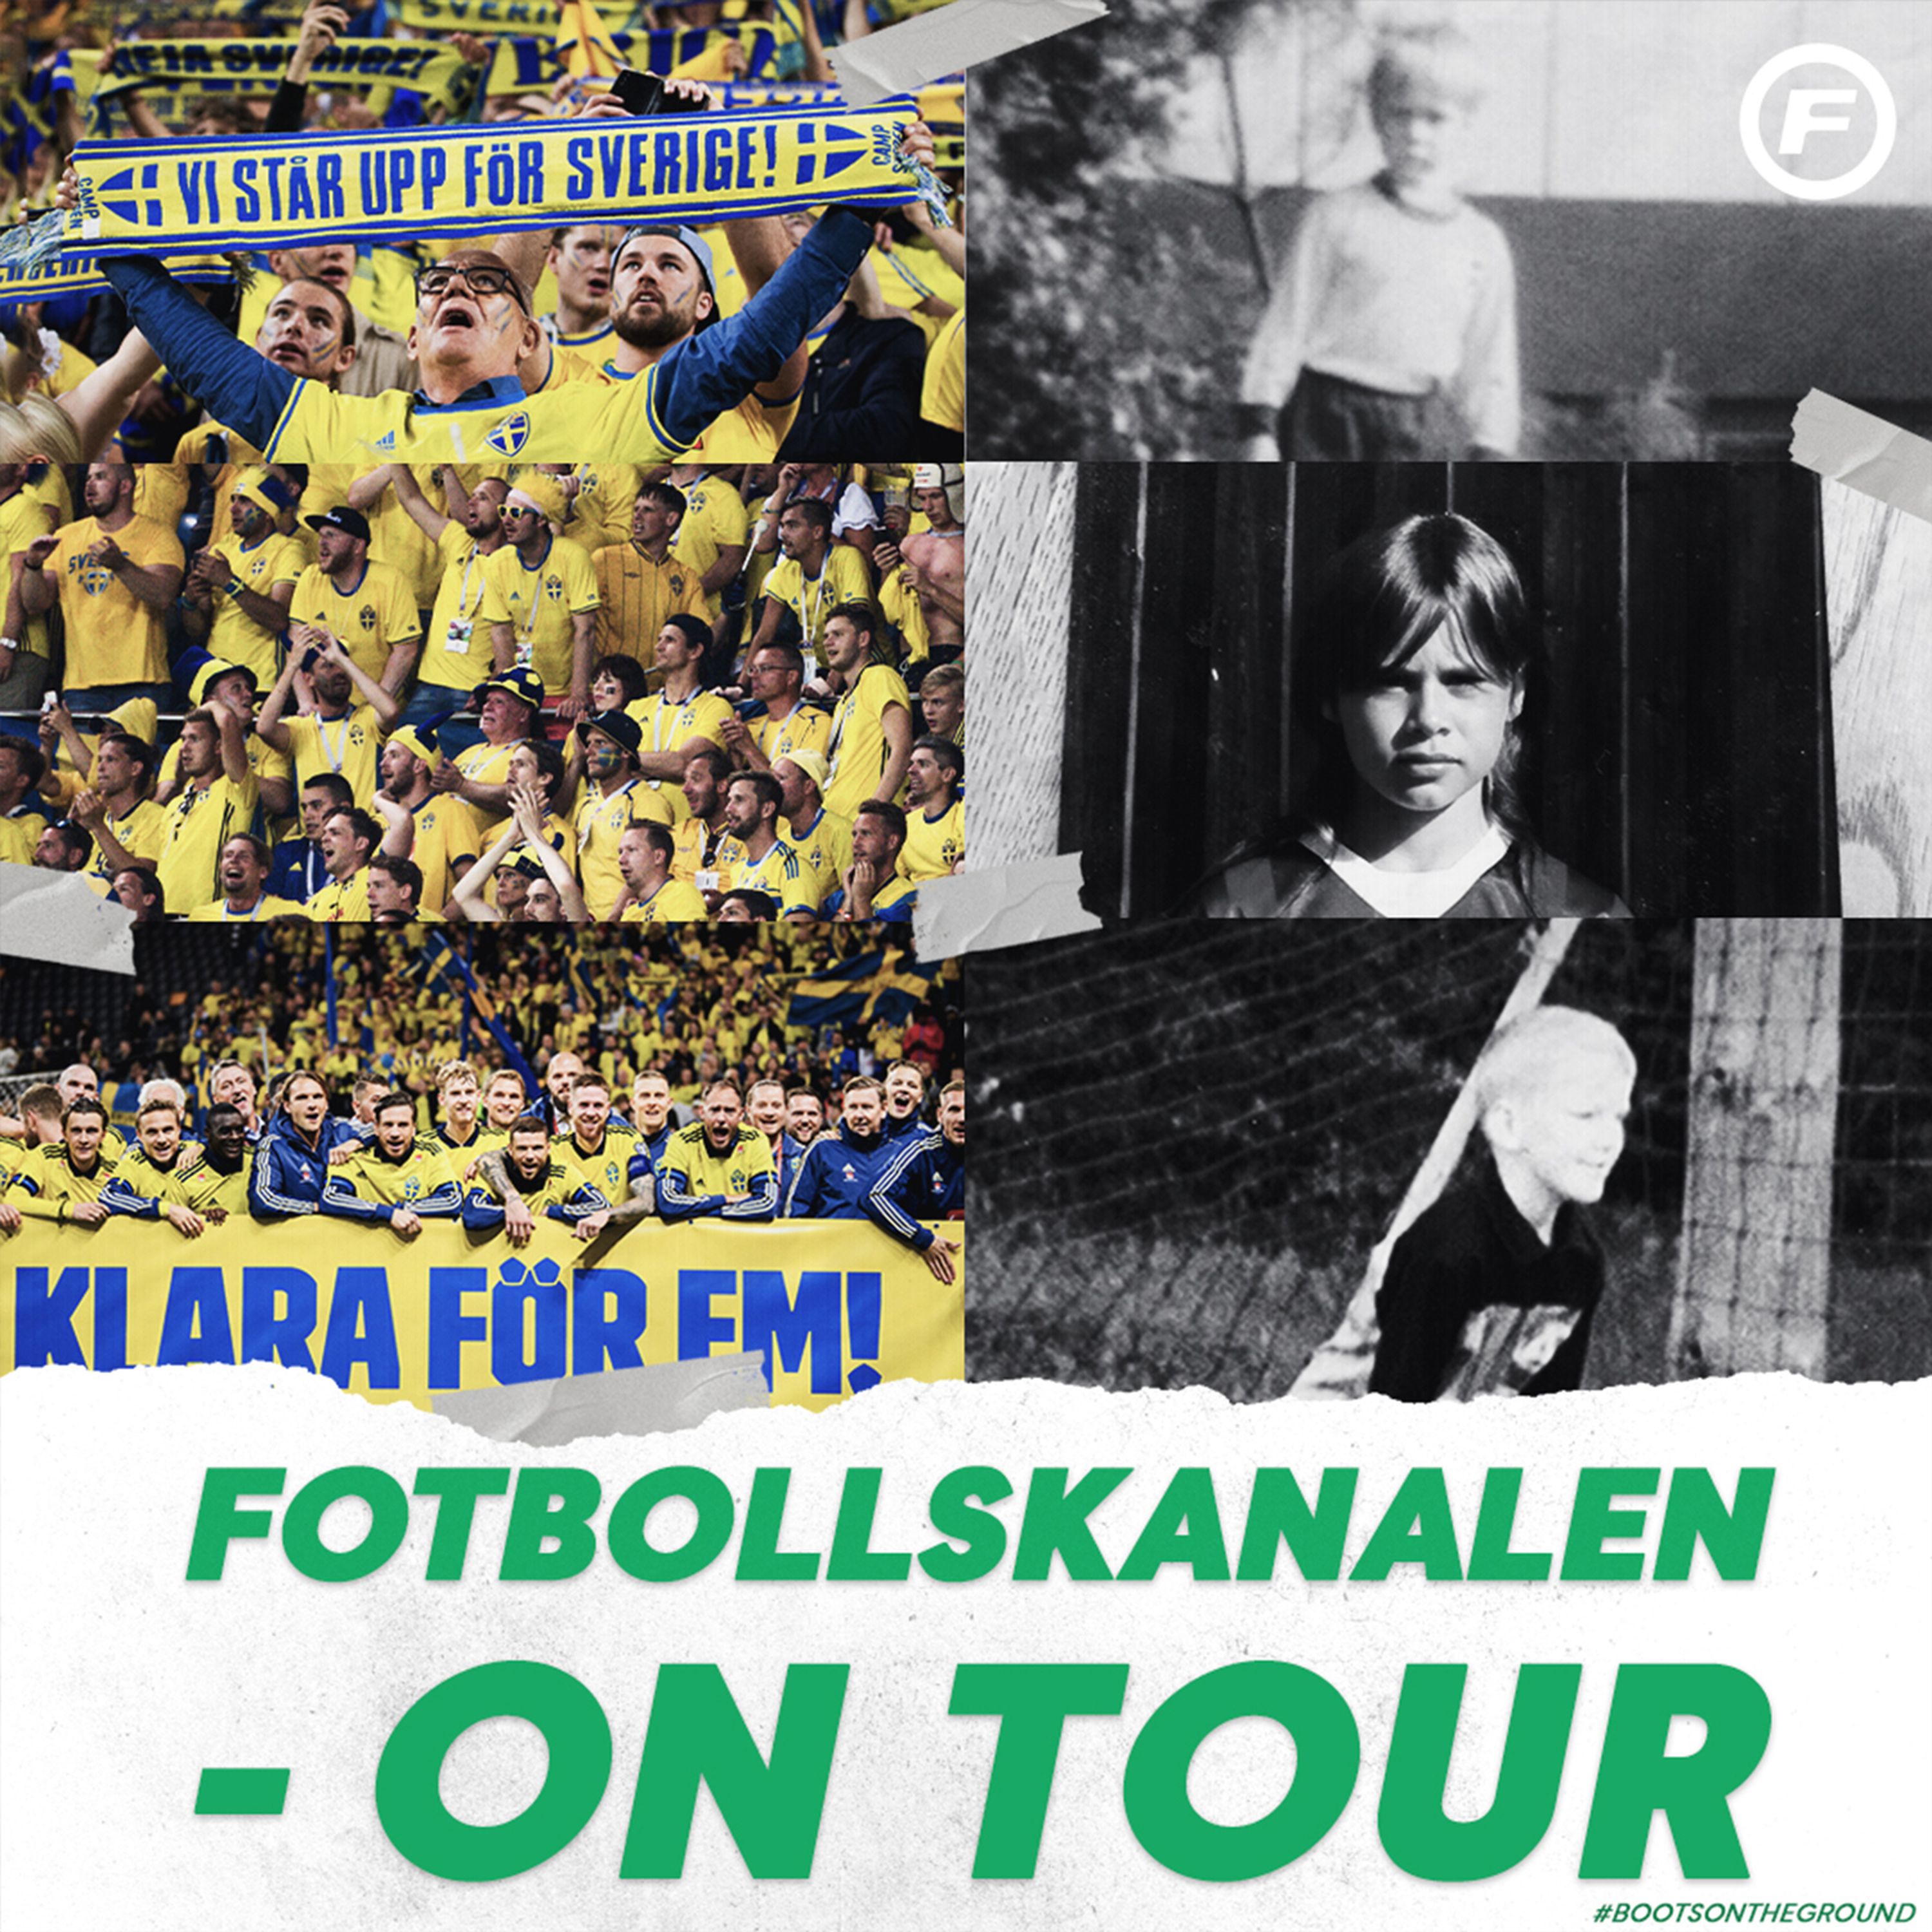 Fotbollskanalen on tour - 7 oktober:”Quaisons situation i Blågult är orättvis”